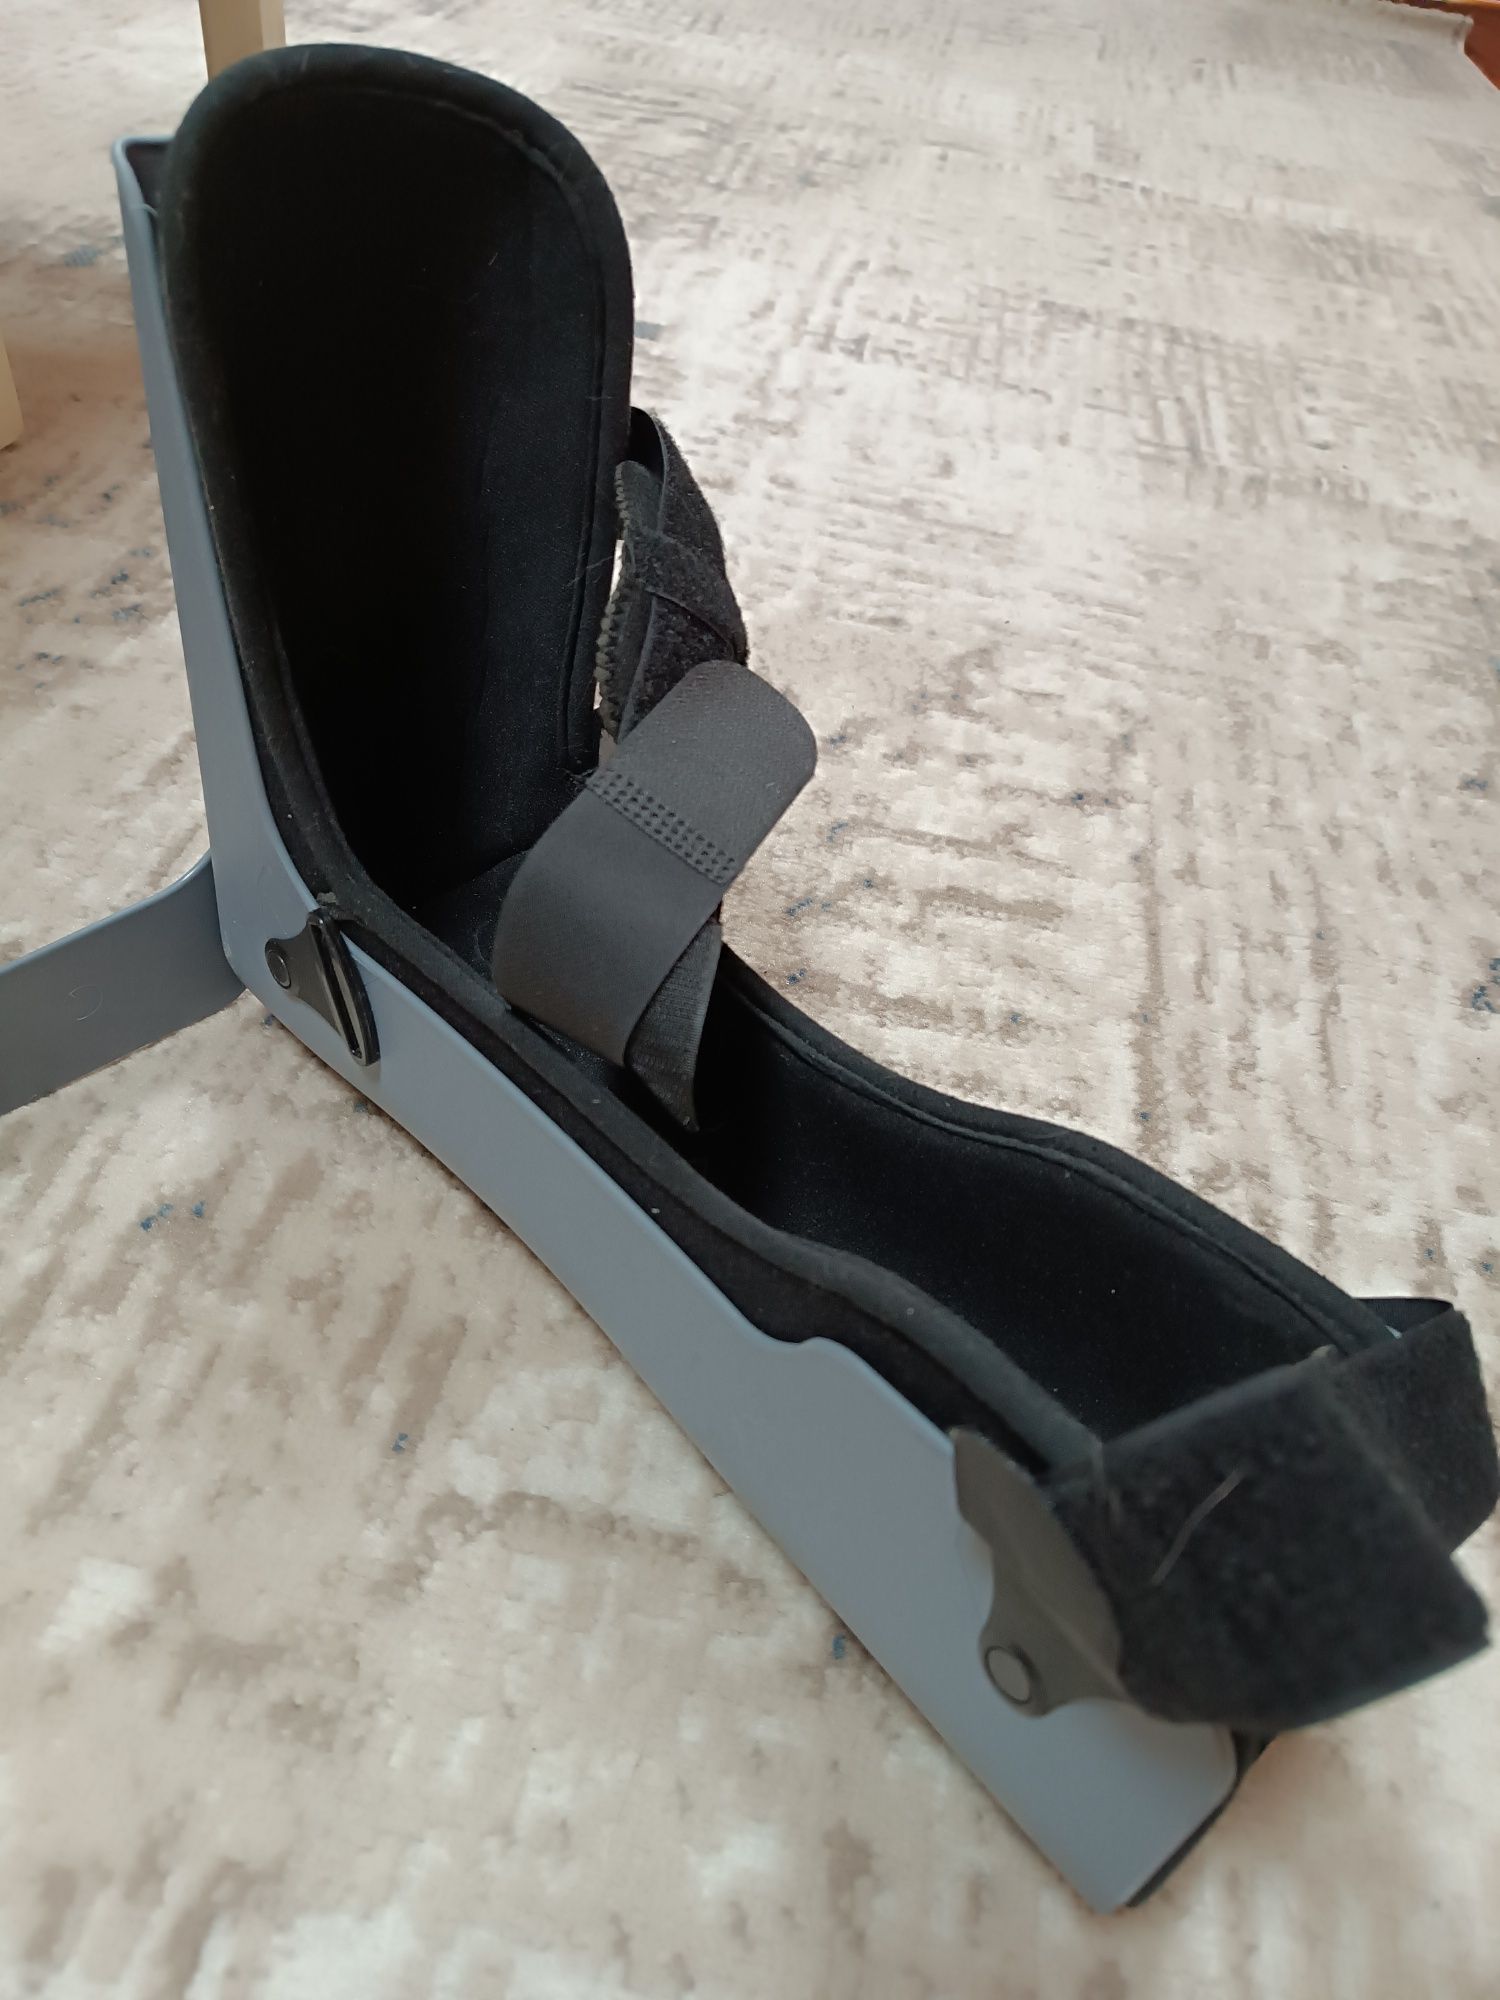 Инвалидная коляска, противопролежный матрас, шина на ногу